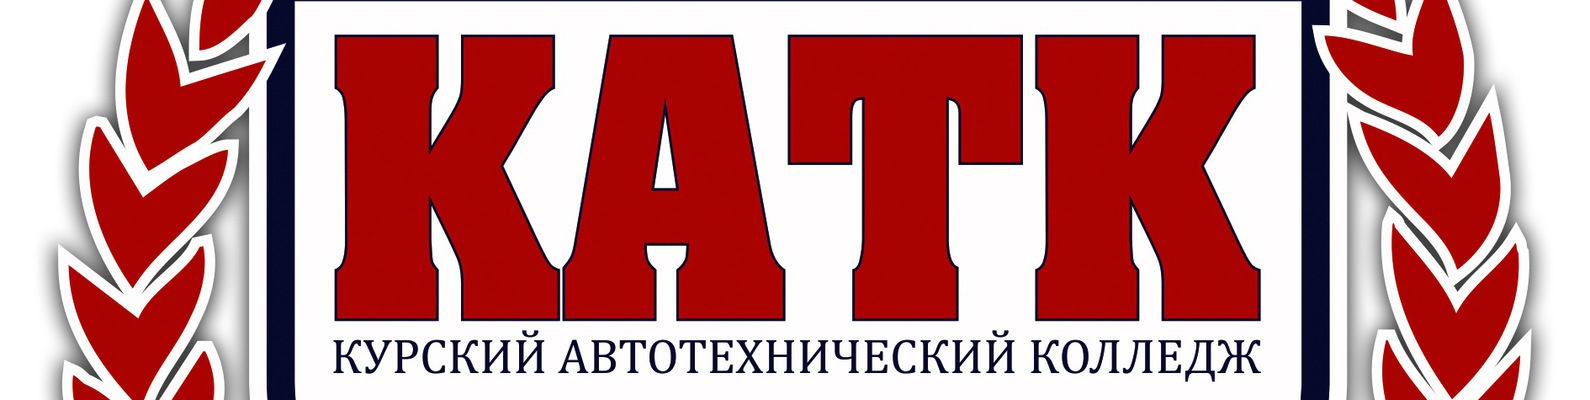 Сайт курский автотехнический. Курский автотехнический колледж. КАТК логотип. КАТК 46. Логотип КАТК Курск.